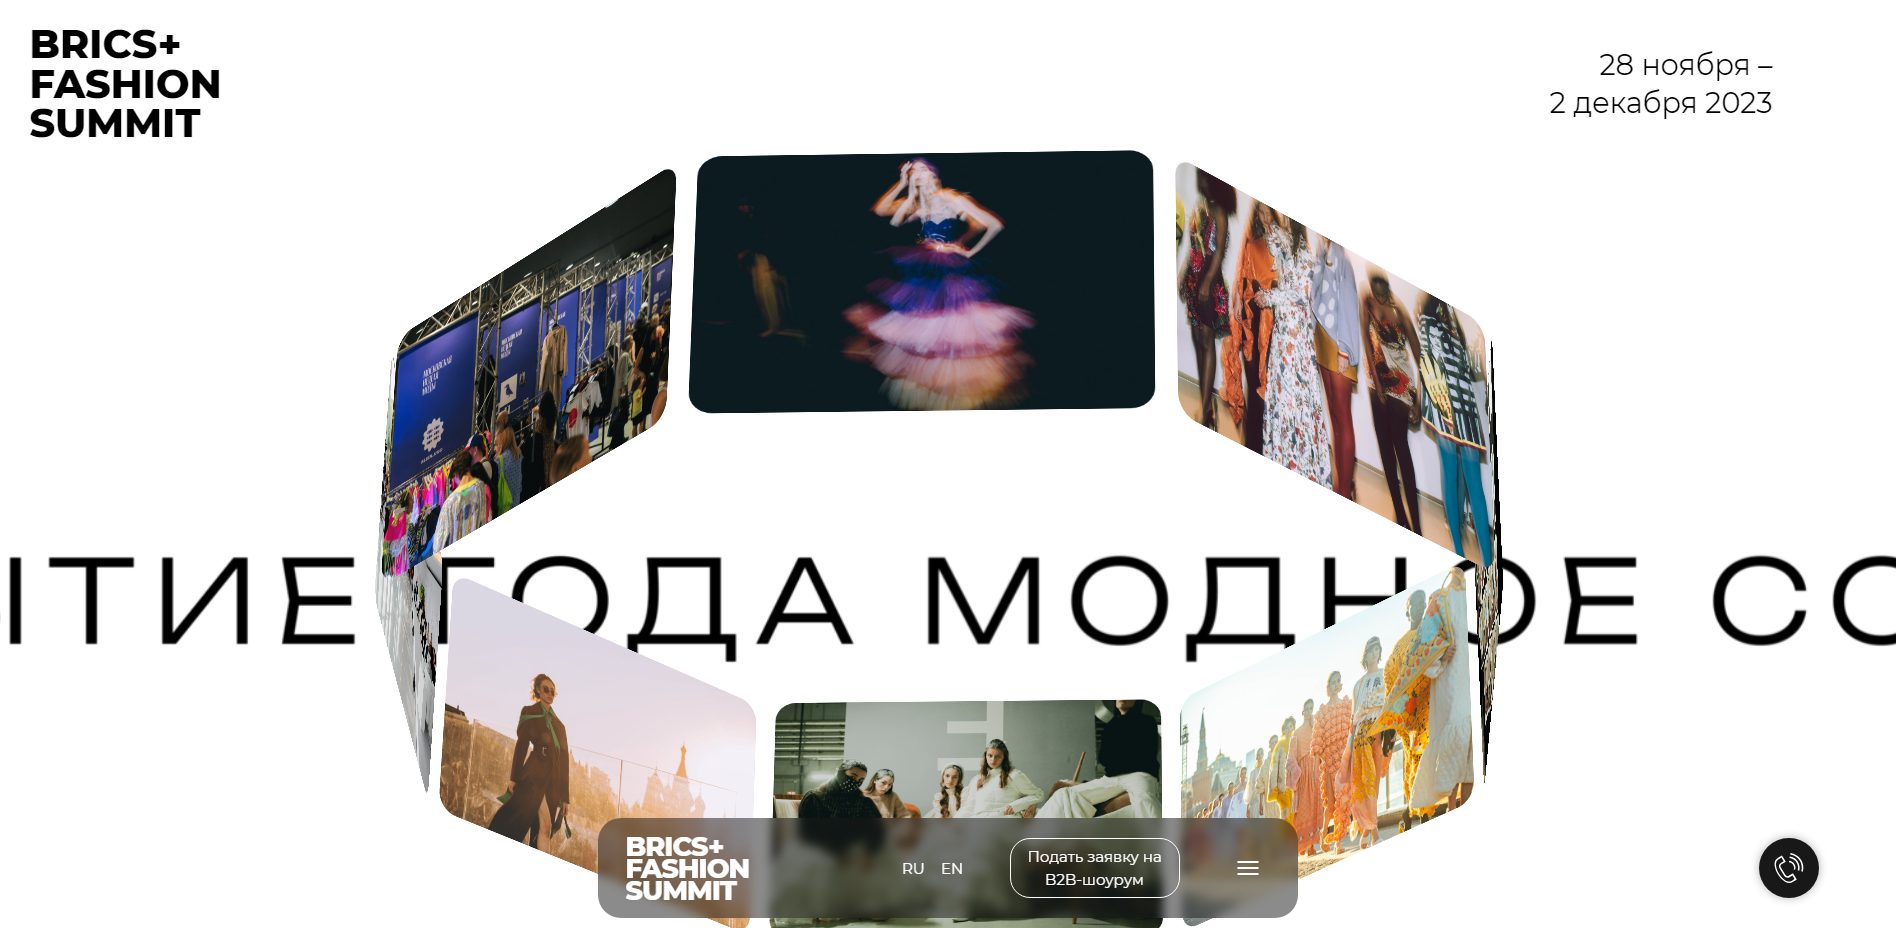 Дизайнеры из Костромы могут прославиться на весь мир на модном форуме BRICS+ Fashion Summit